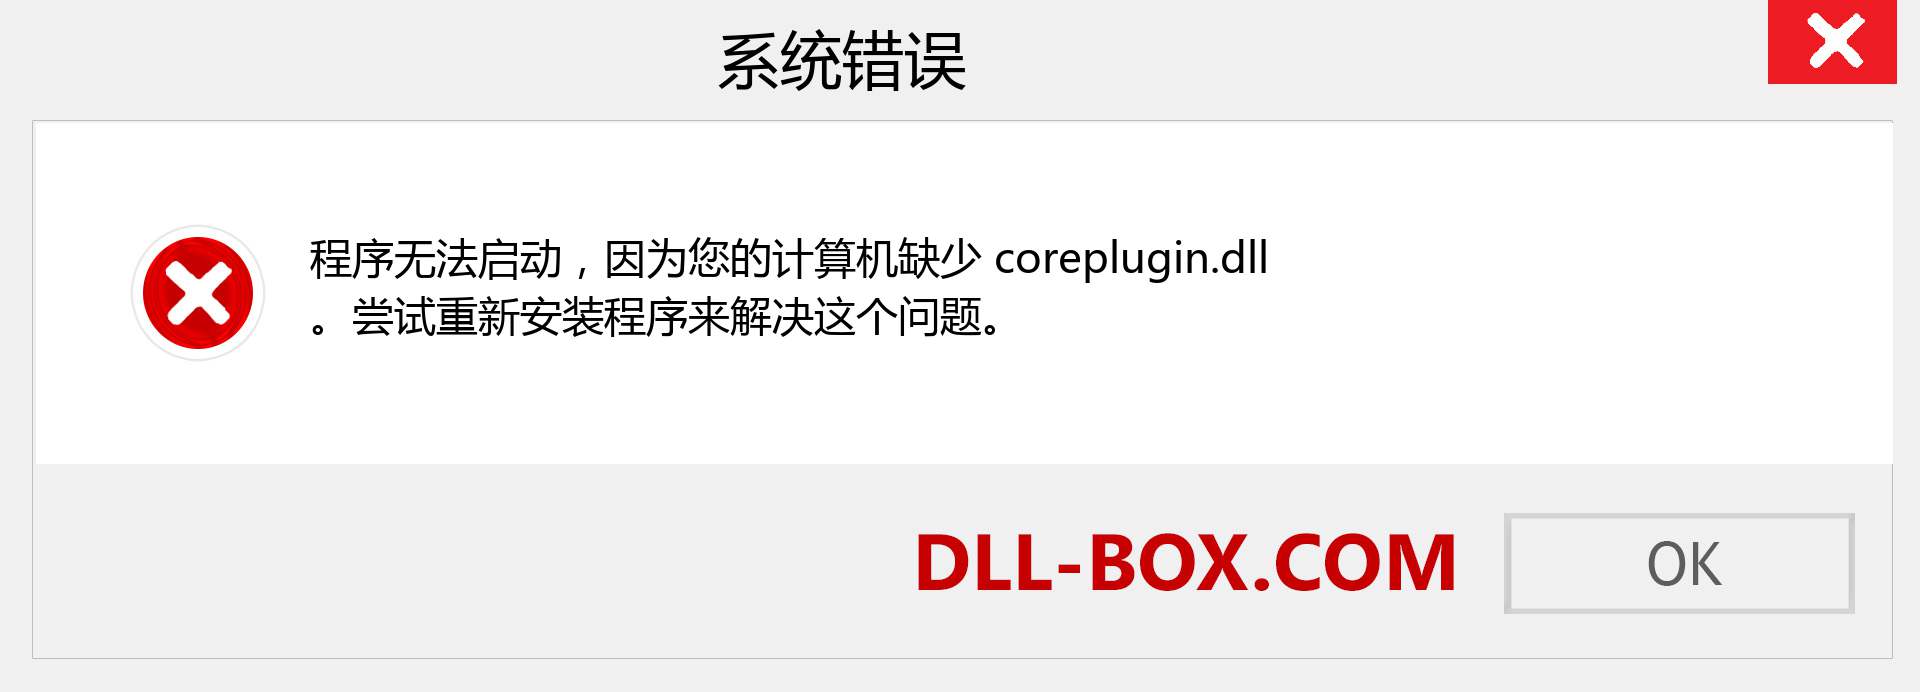 coreplugin.dll 文件丢失？。 适用于 Windows 7、8、10 的下载 - 修复 Windows、照片、图像上的 coreplugin dll 丢失错误